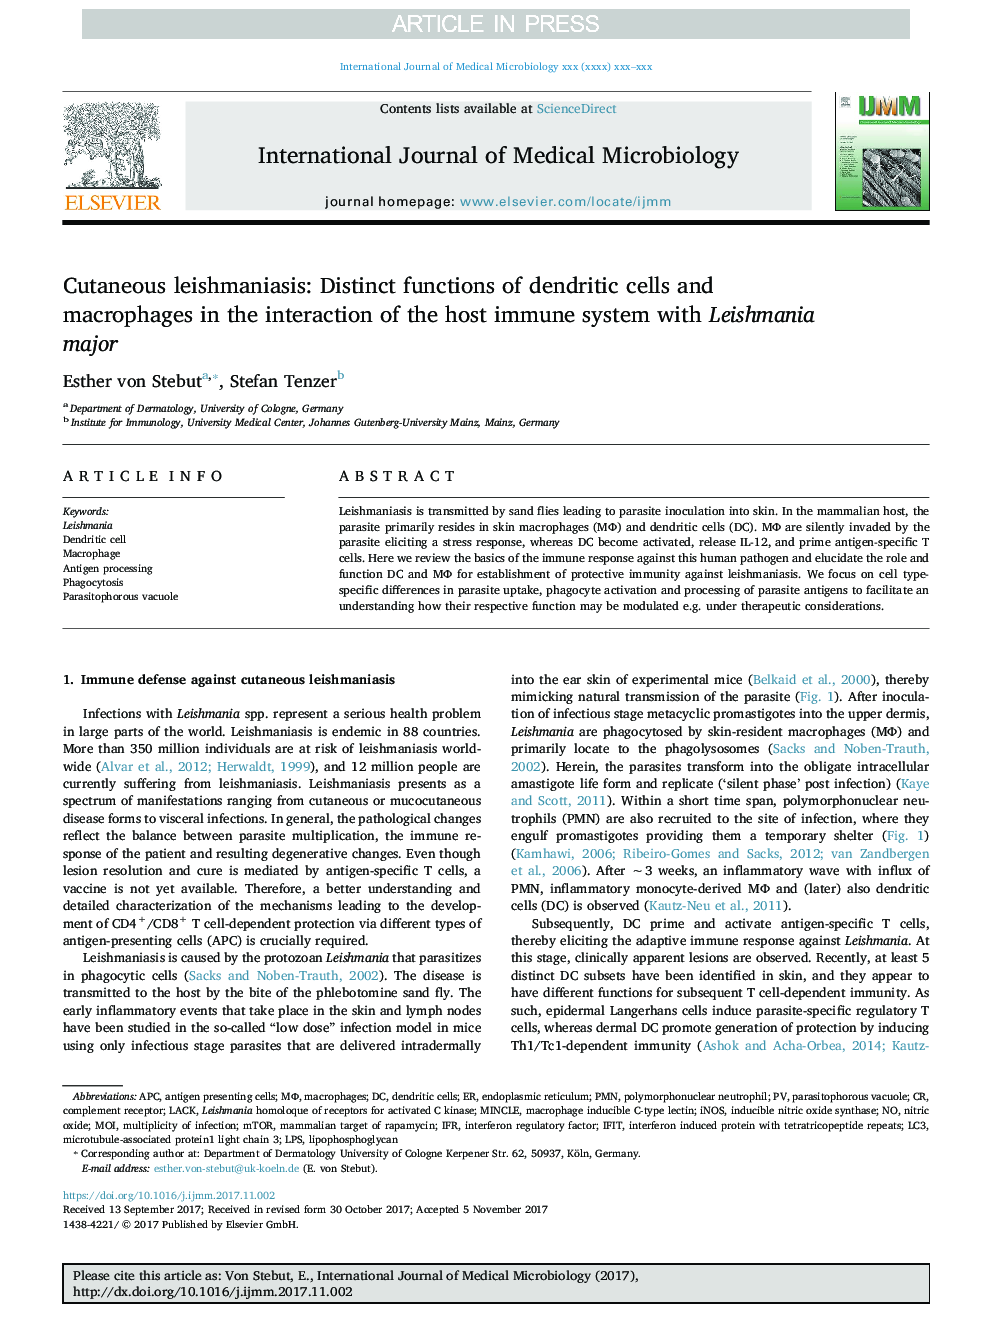 لیشمانیوز جلدی: عملکرد مشخصی از سلولهای دندریتیک و ماکروفاژها در تعامل سیستم ایمنی میزبان با لیشمانیا بزرگ 